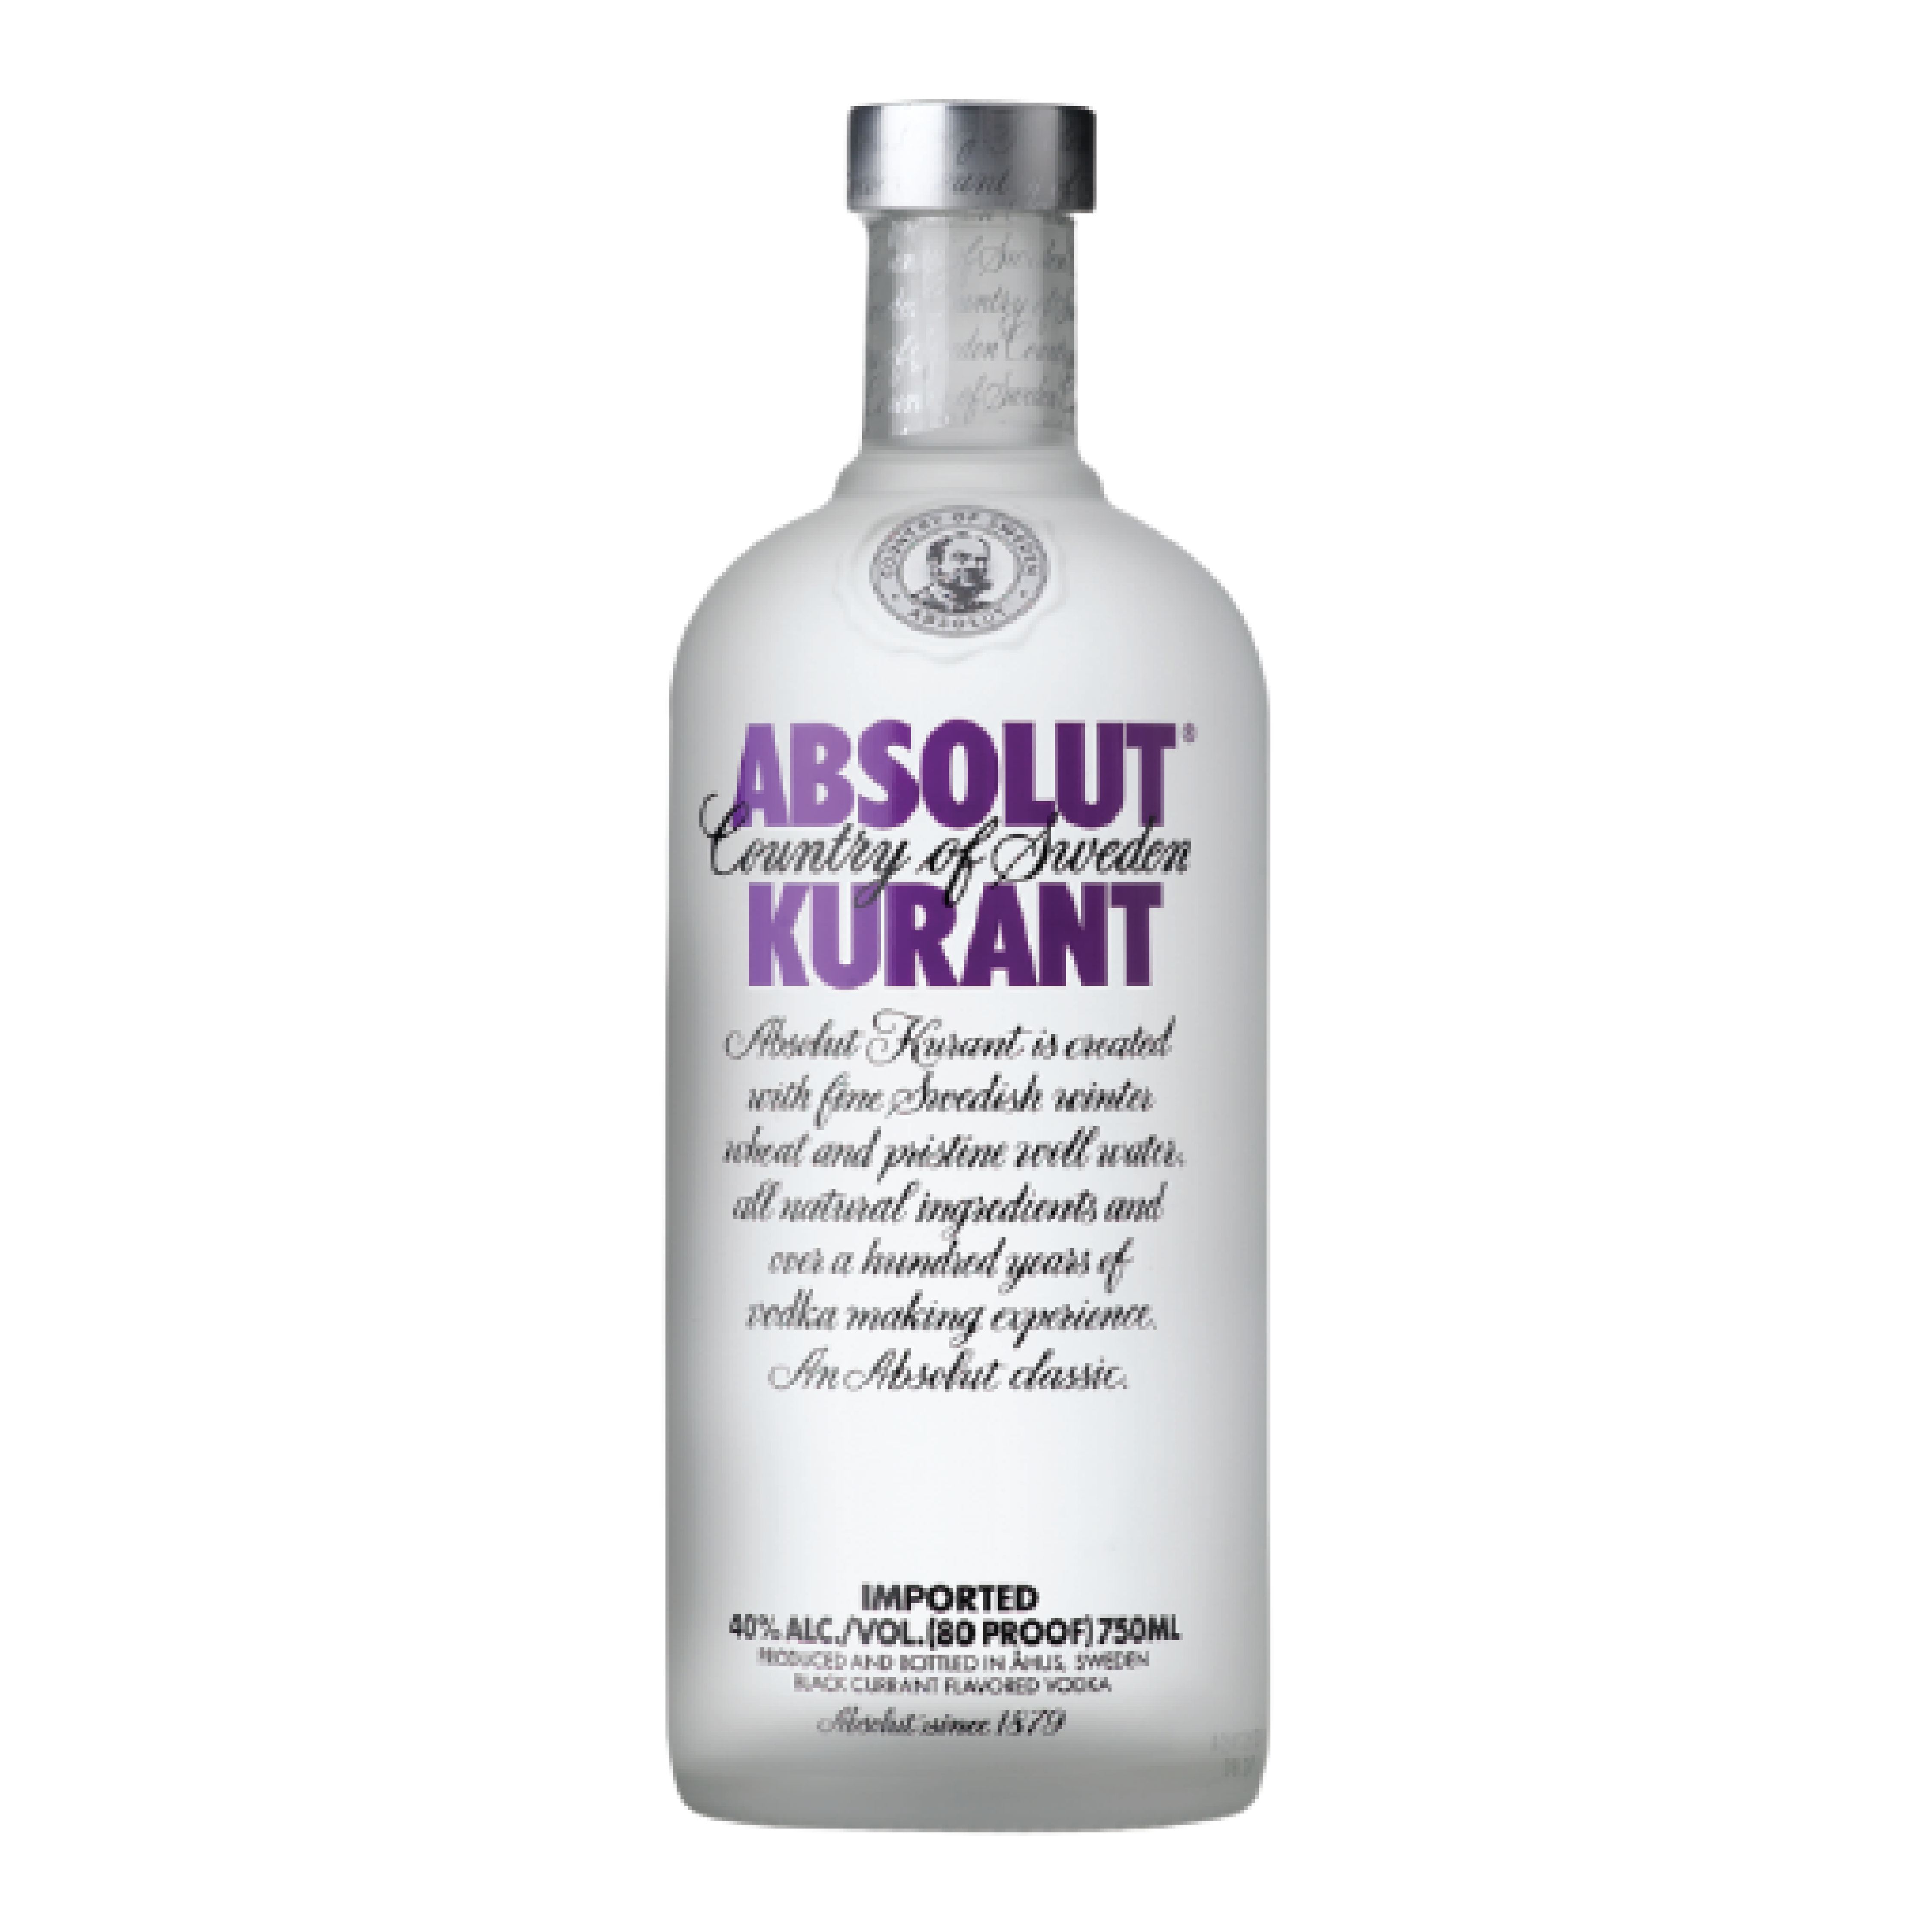 Absolut Kurant Vodka 750ml